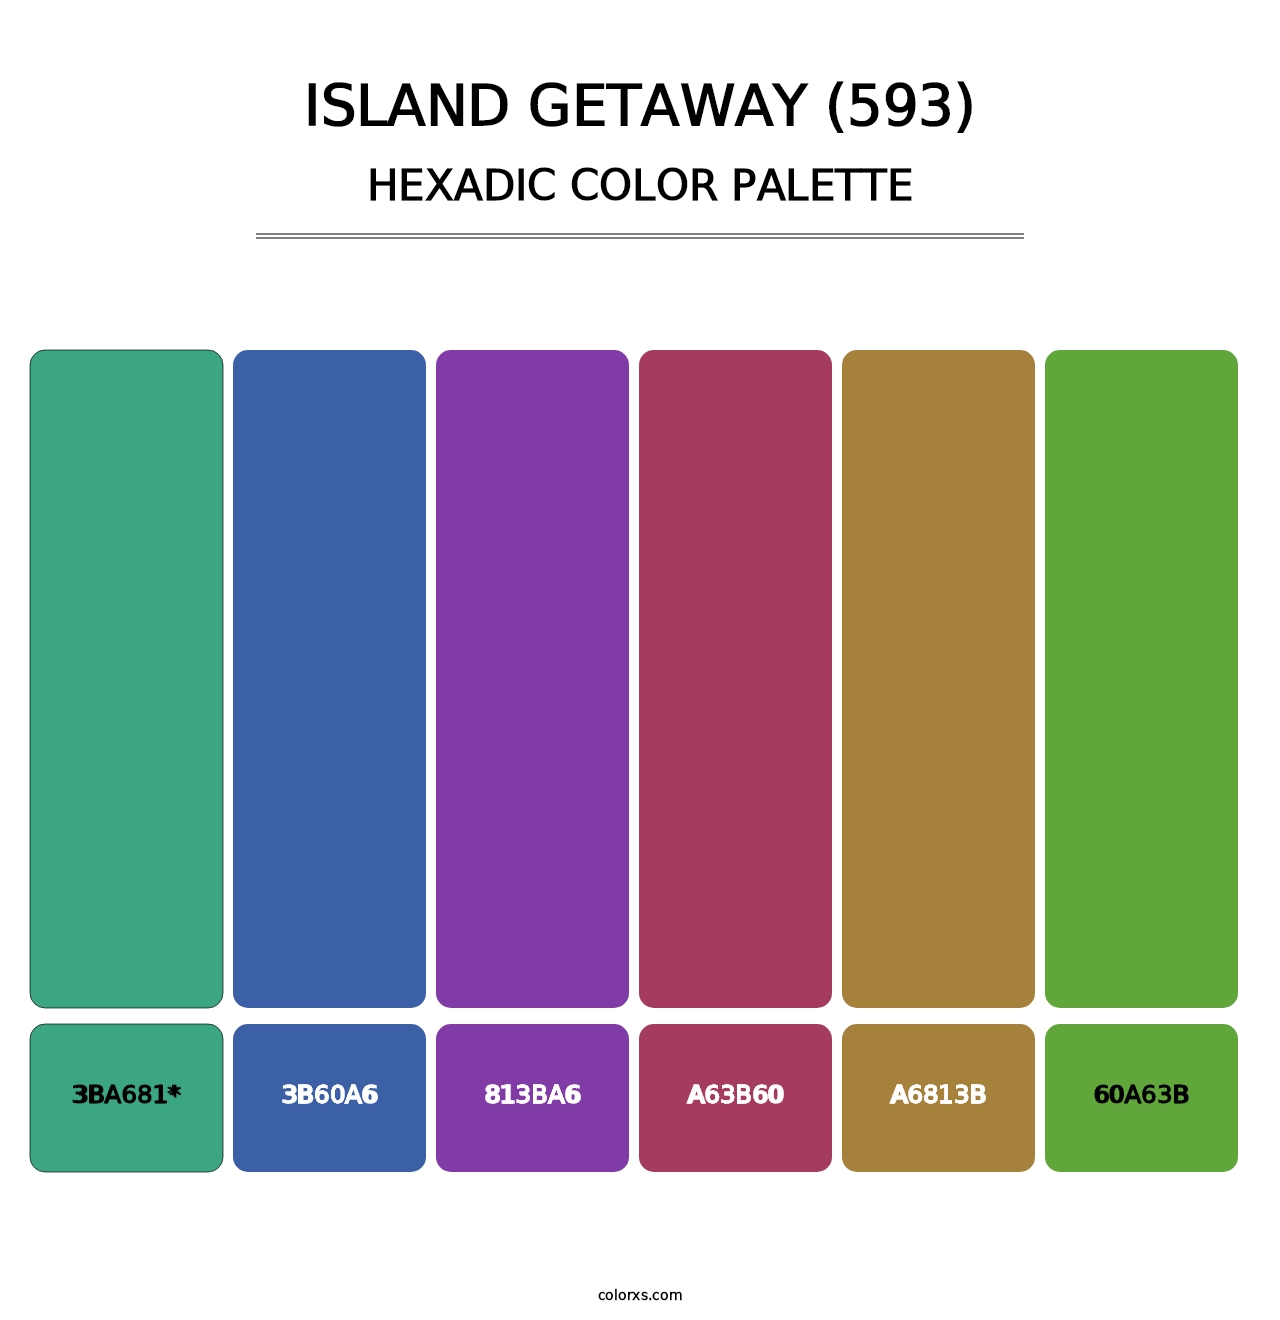 Island Getaway (593) - Hexadic Color Palette